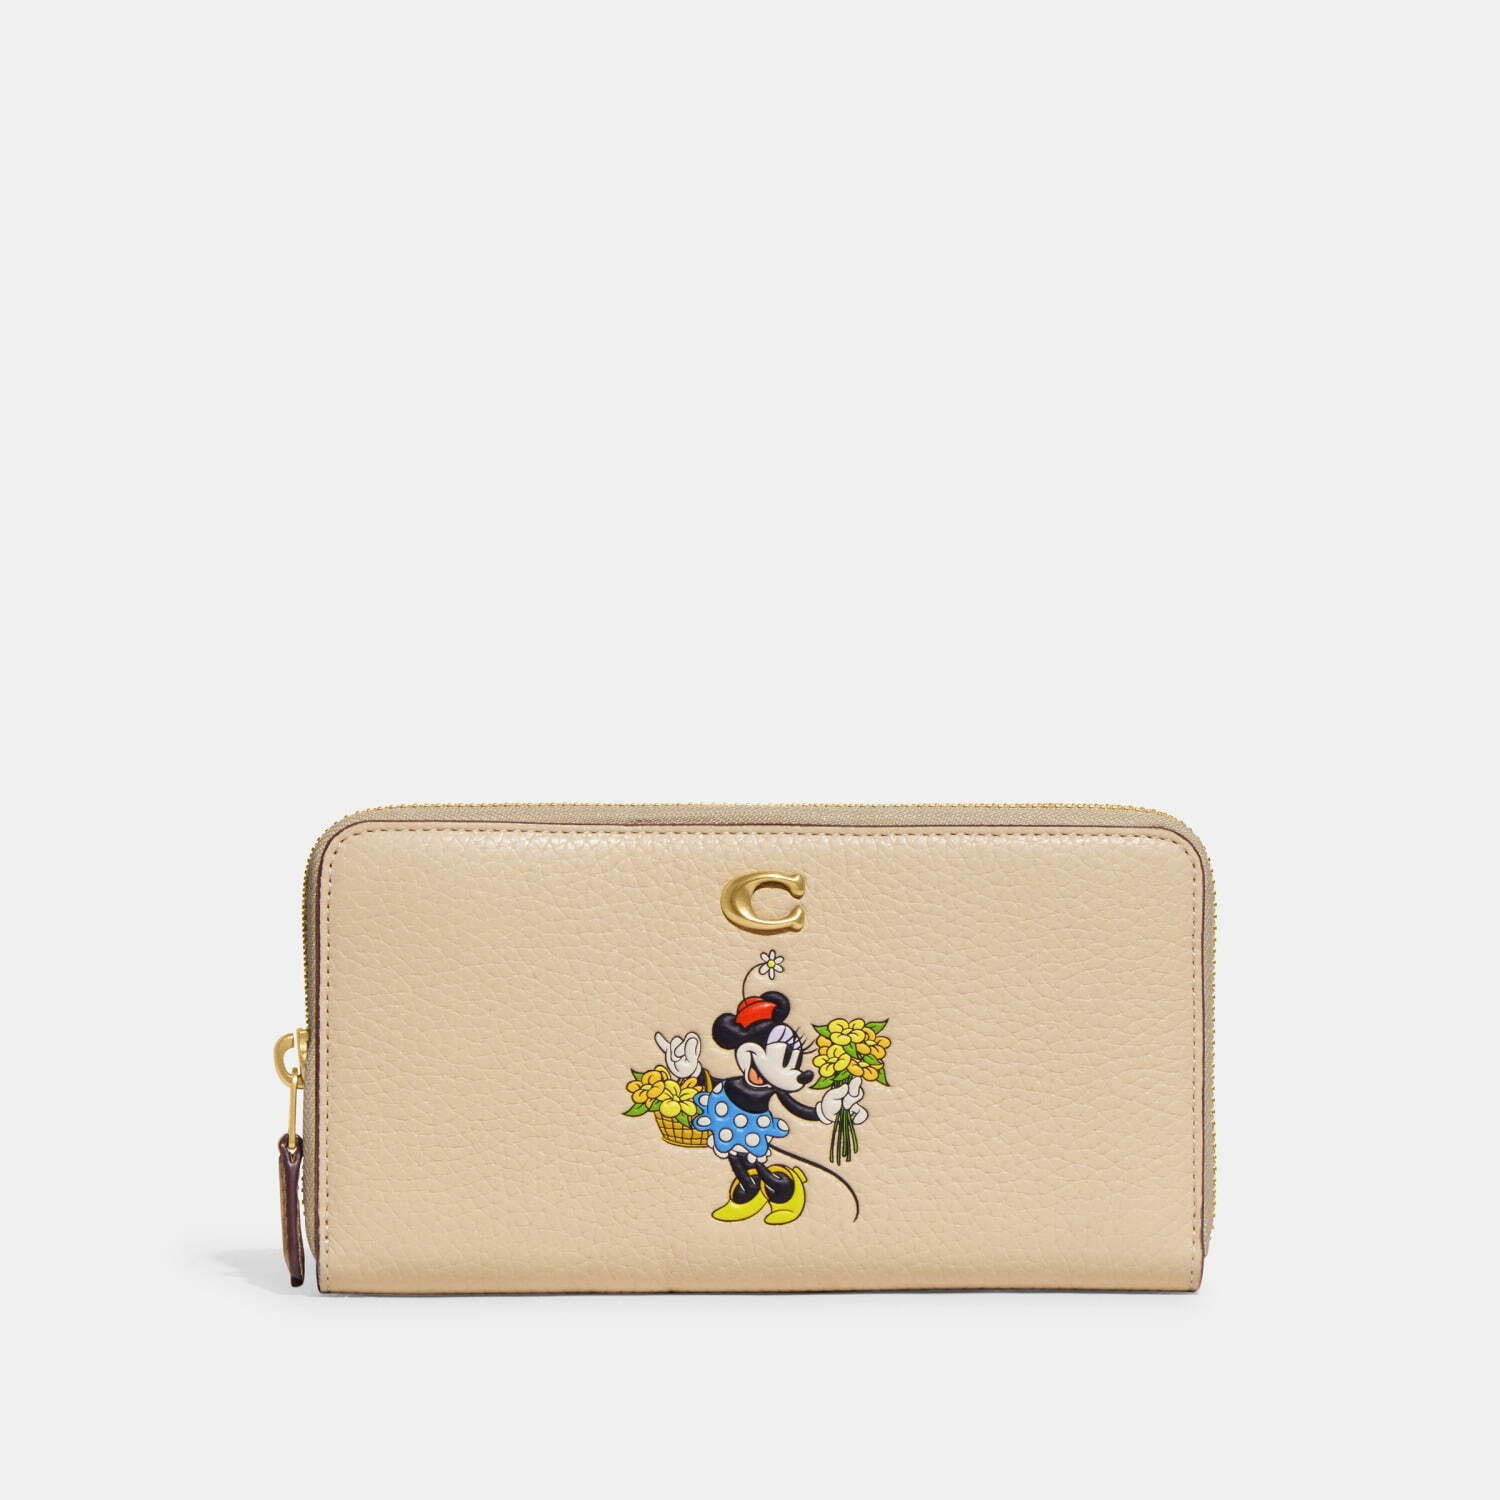 コーチ「ディズニー」自然テーマの“ミッキーマウス”パッチ付きバッグ